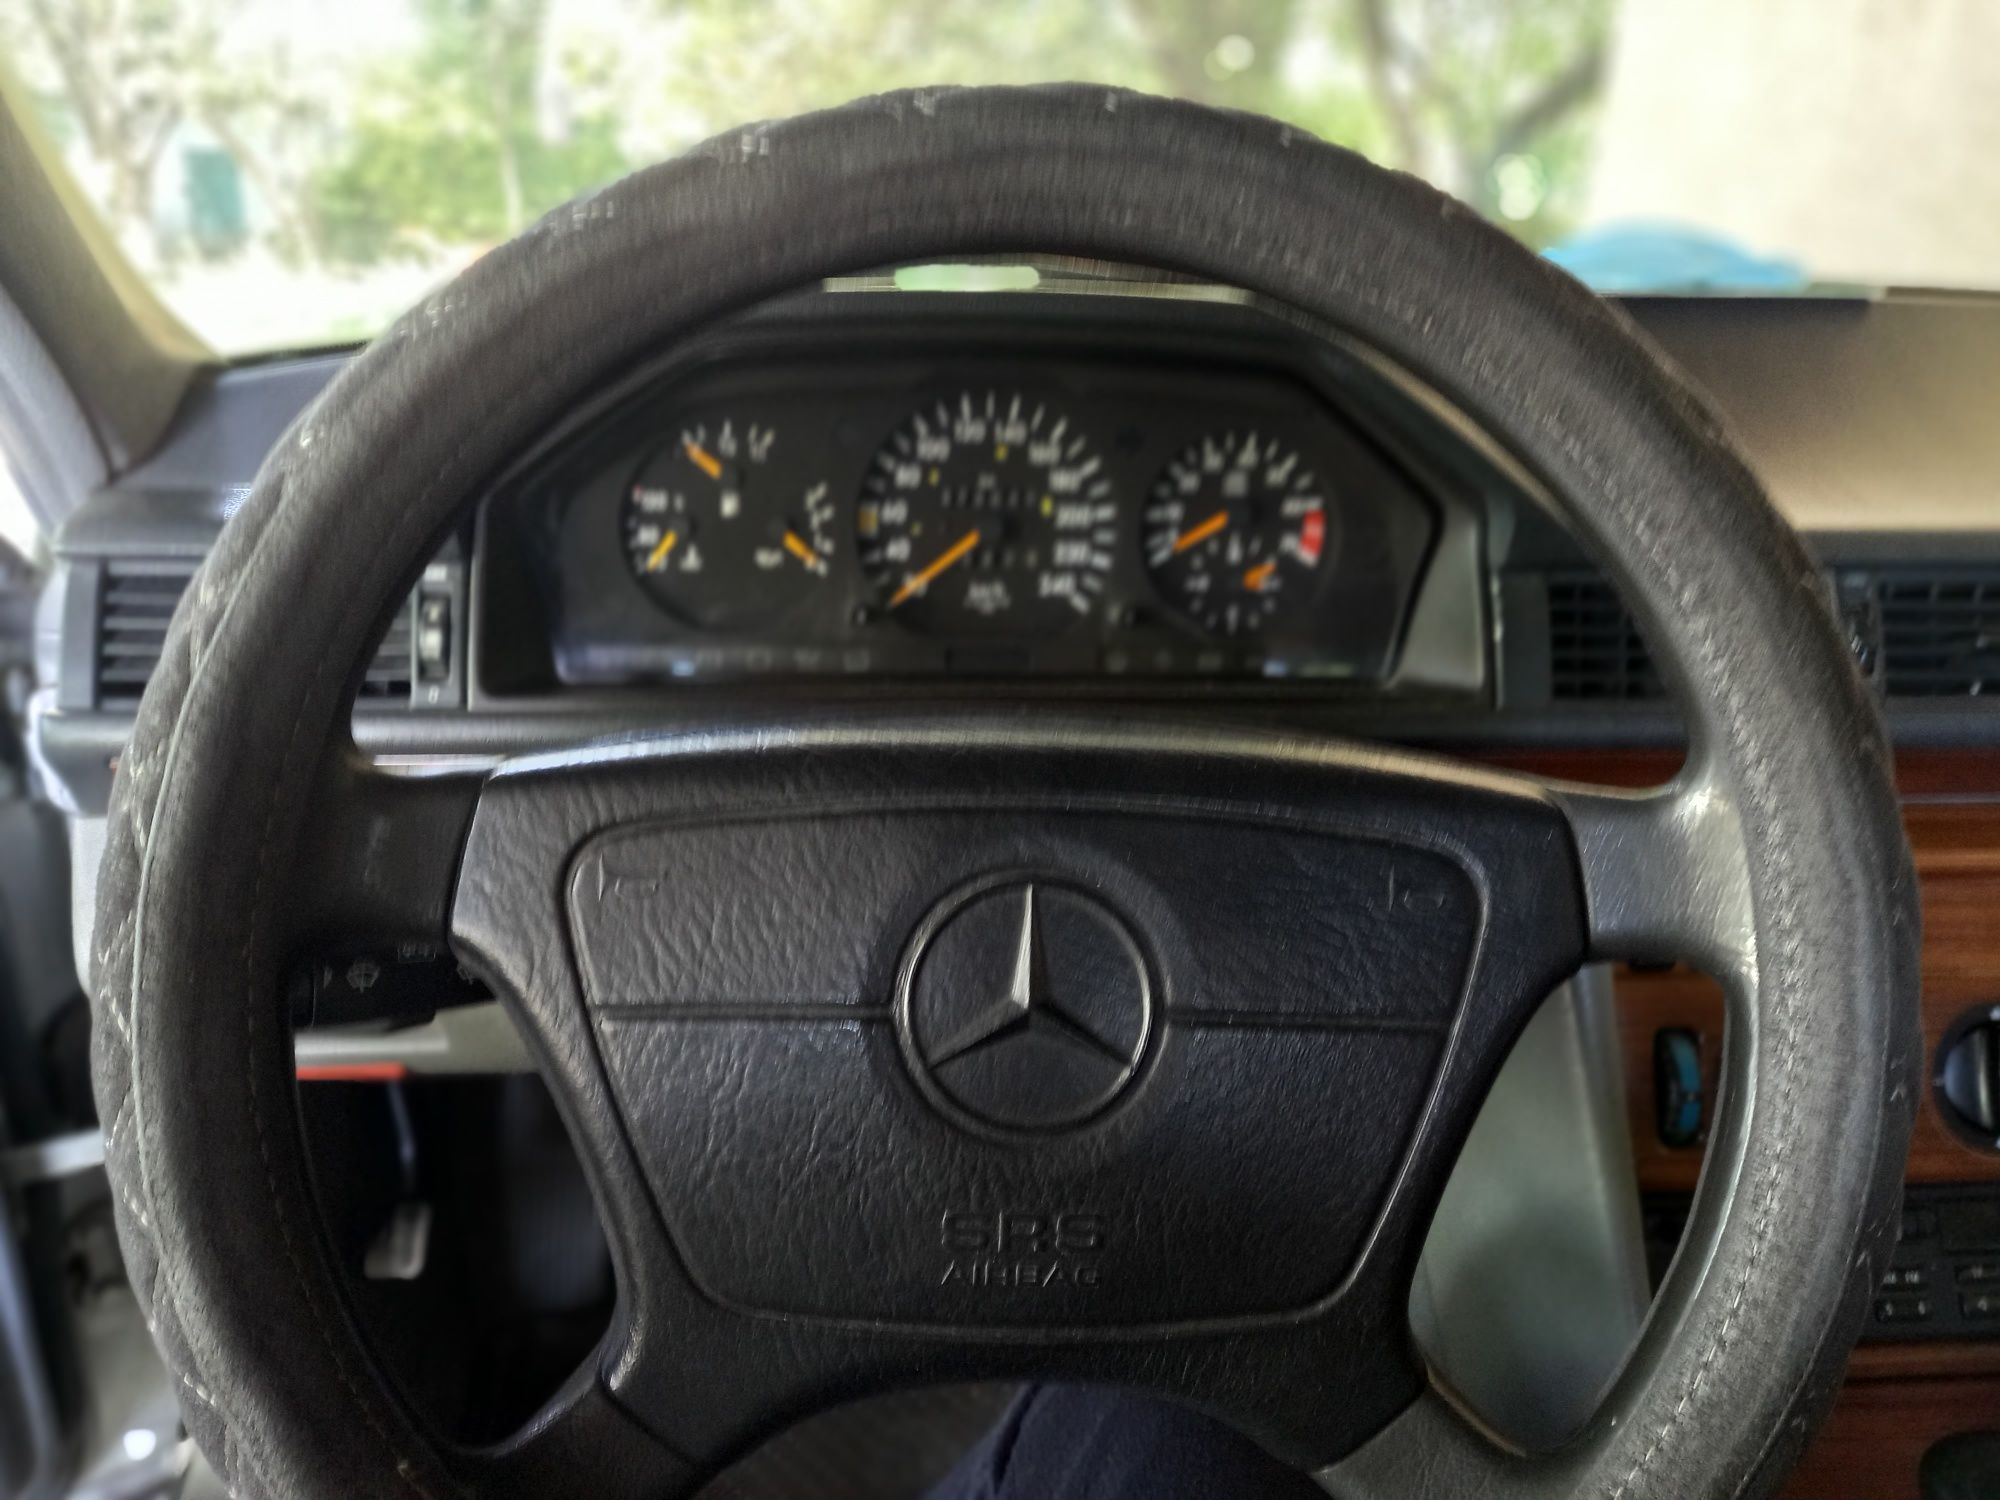 Mercedes E260 год 1992